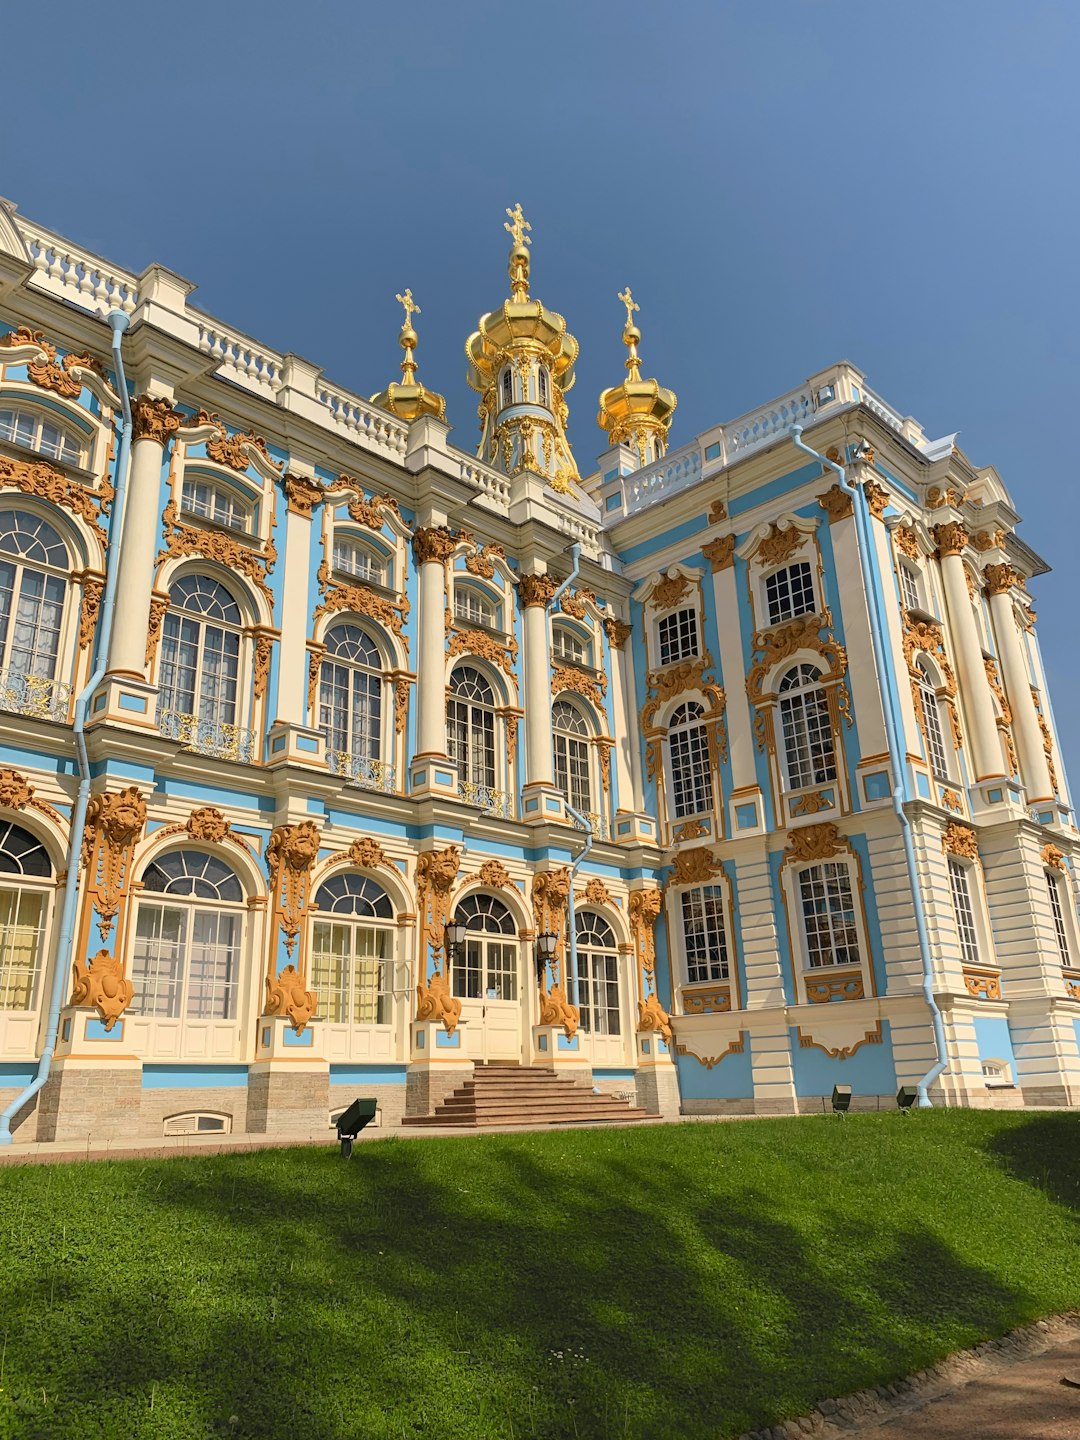 photo of Catherine Palace Landmark near Tsarskoye Selo